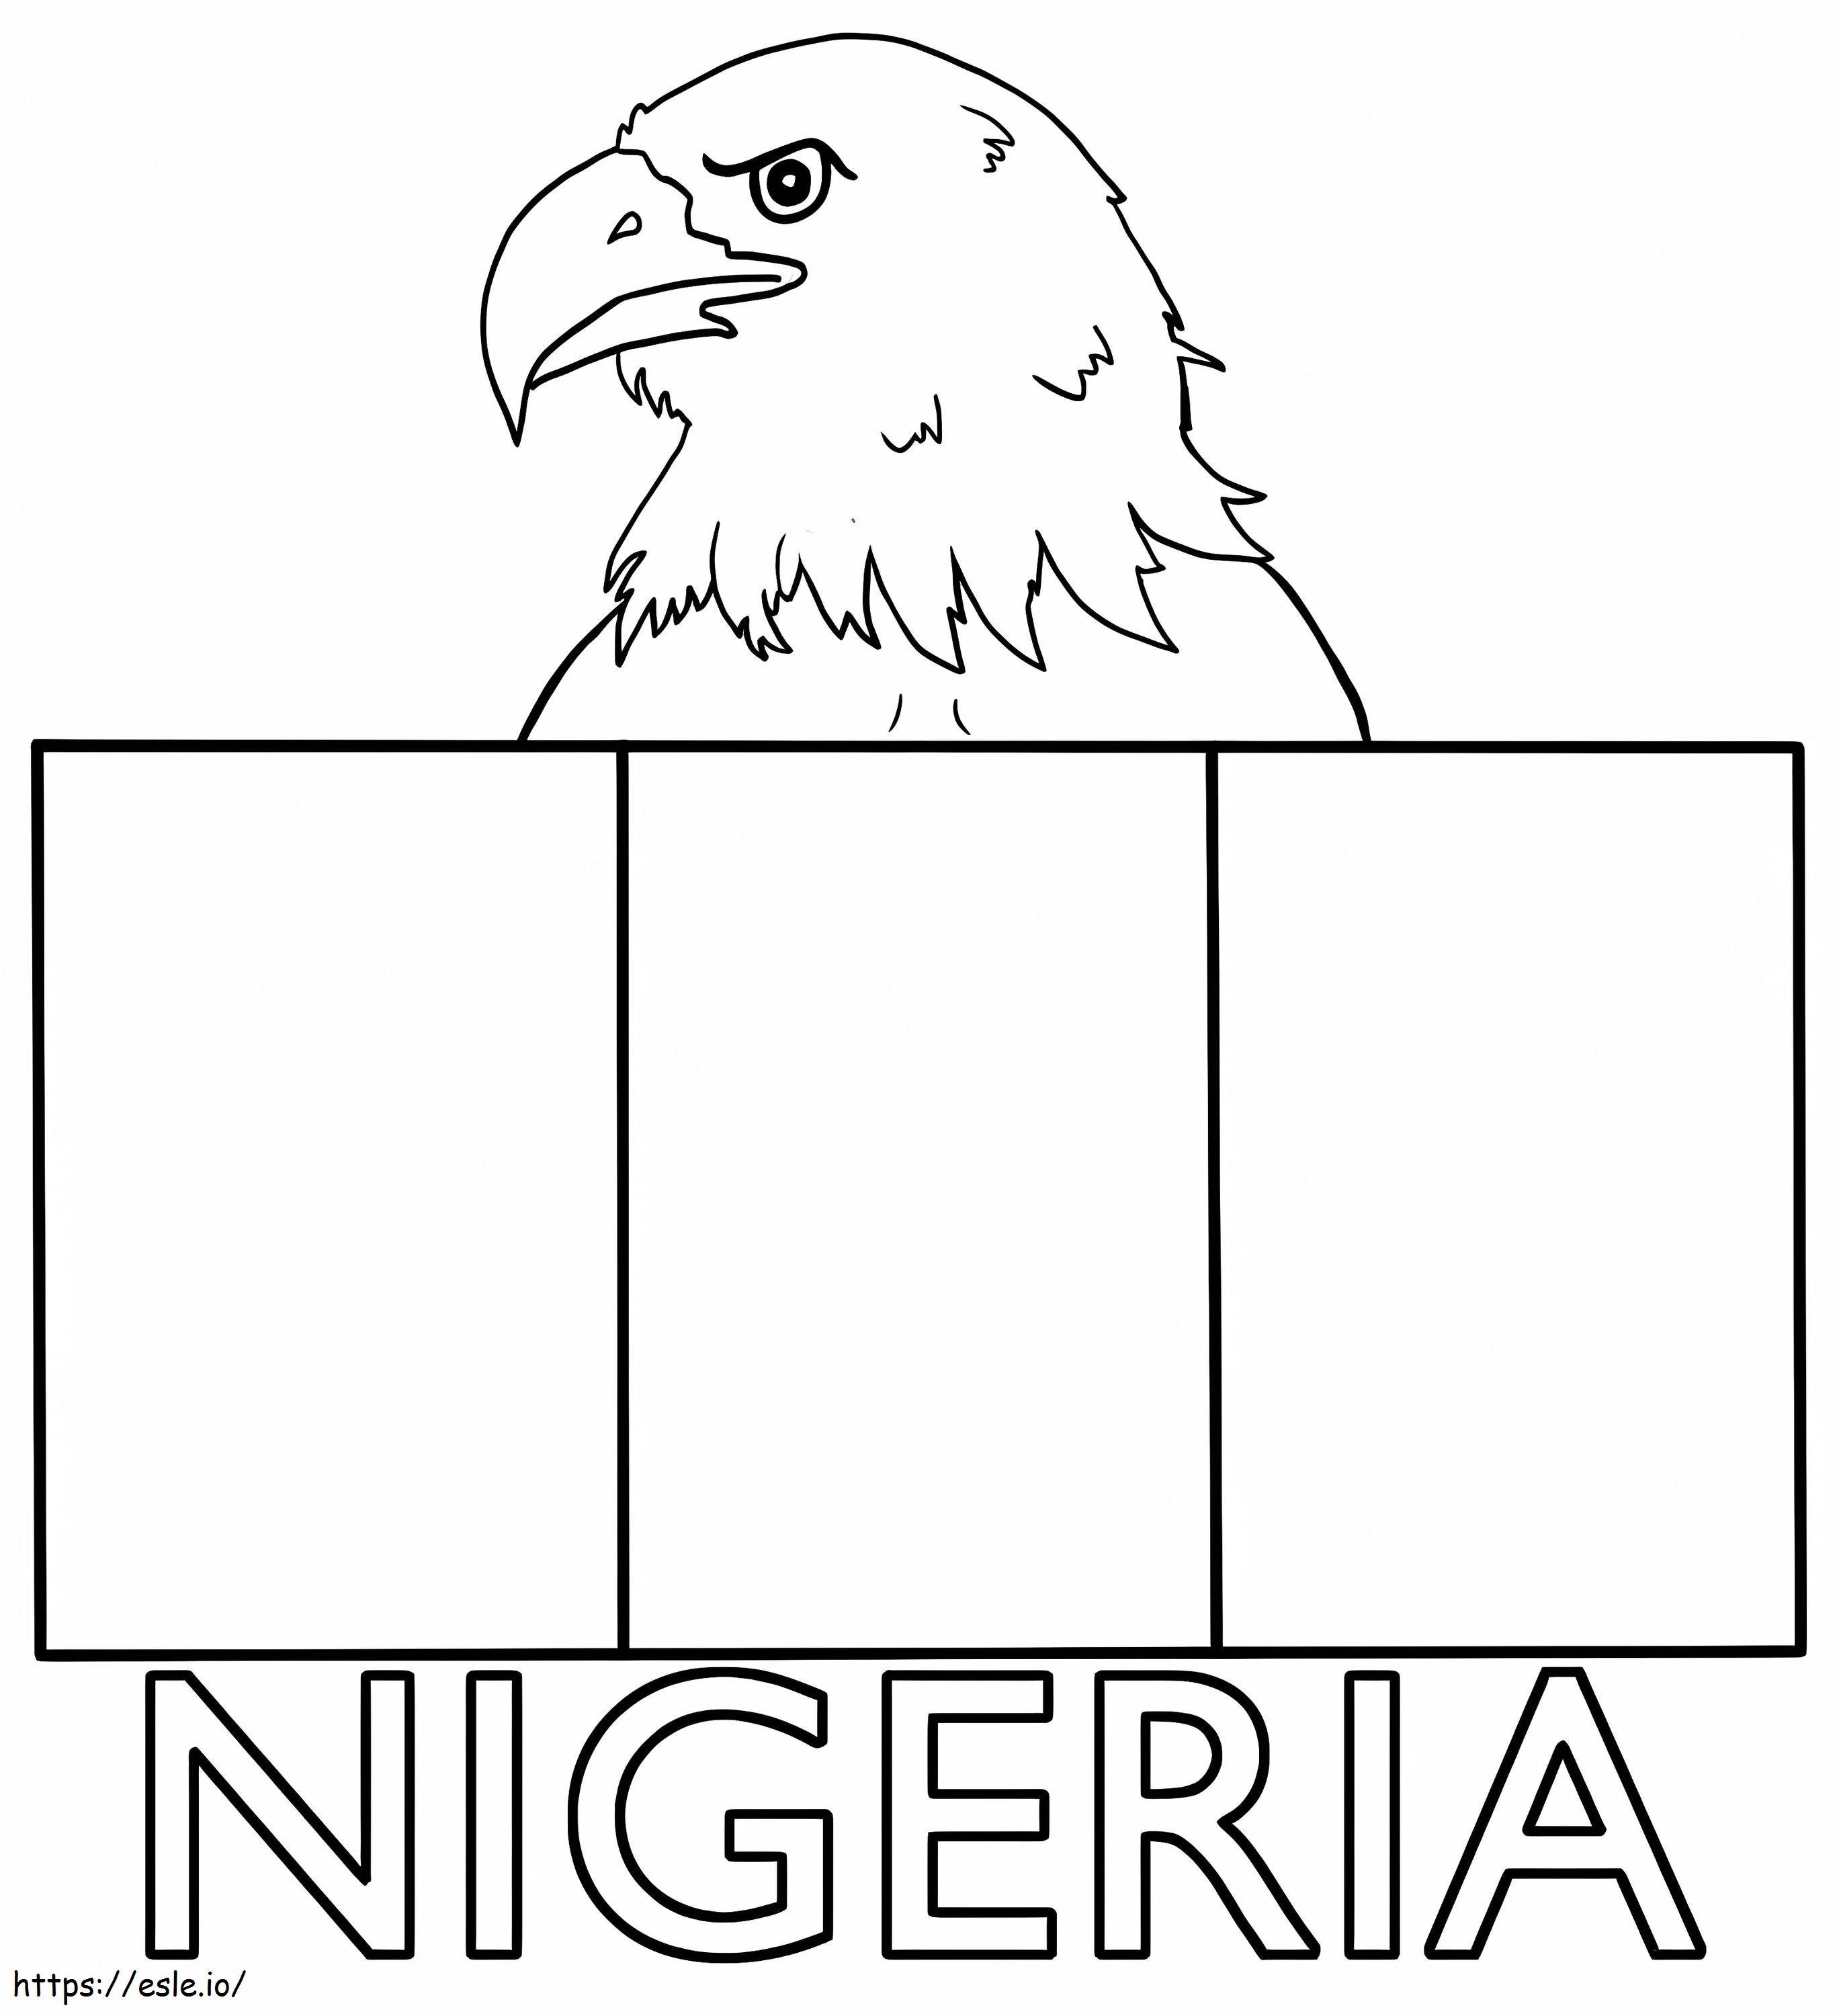 Flaga Nigerii kolorowanka